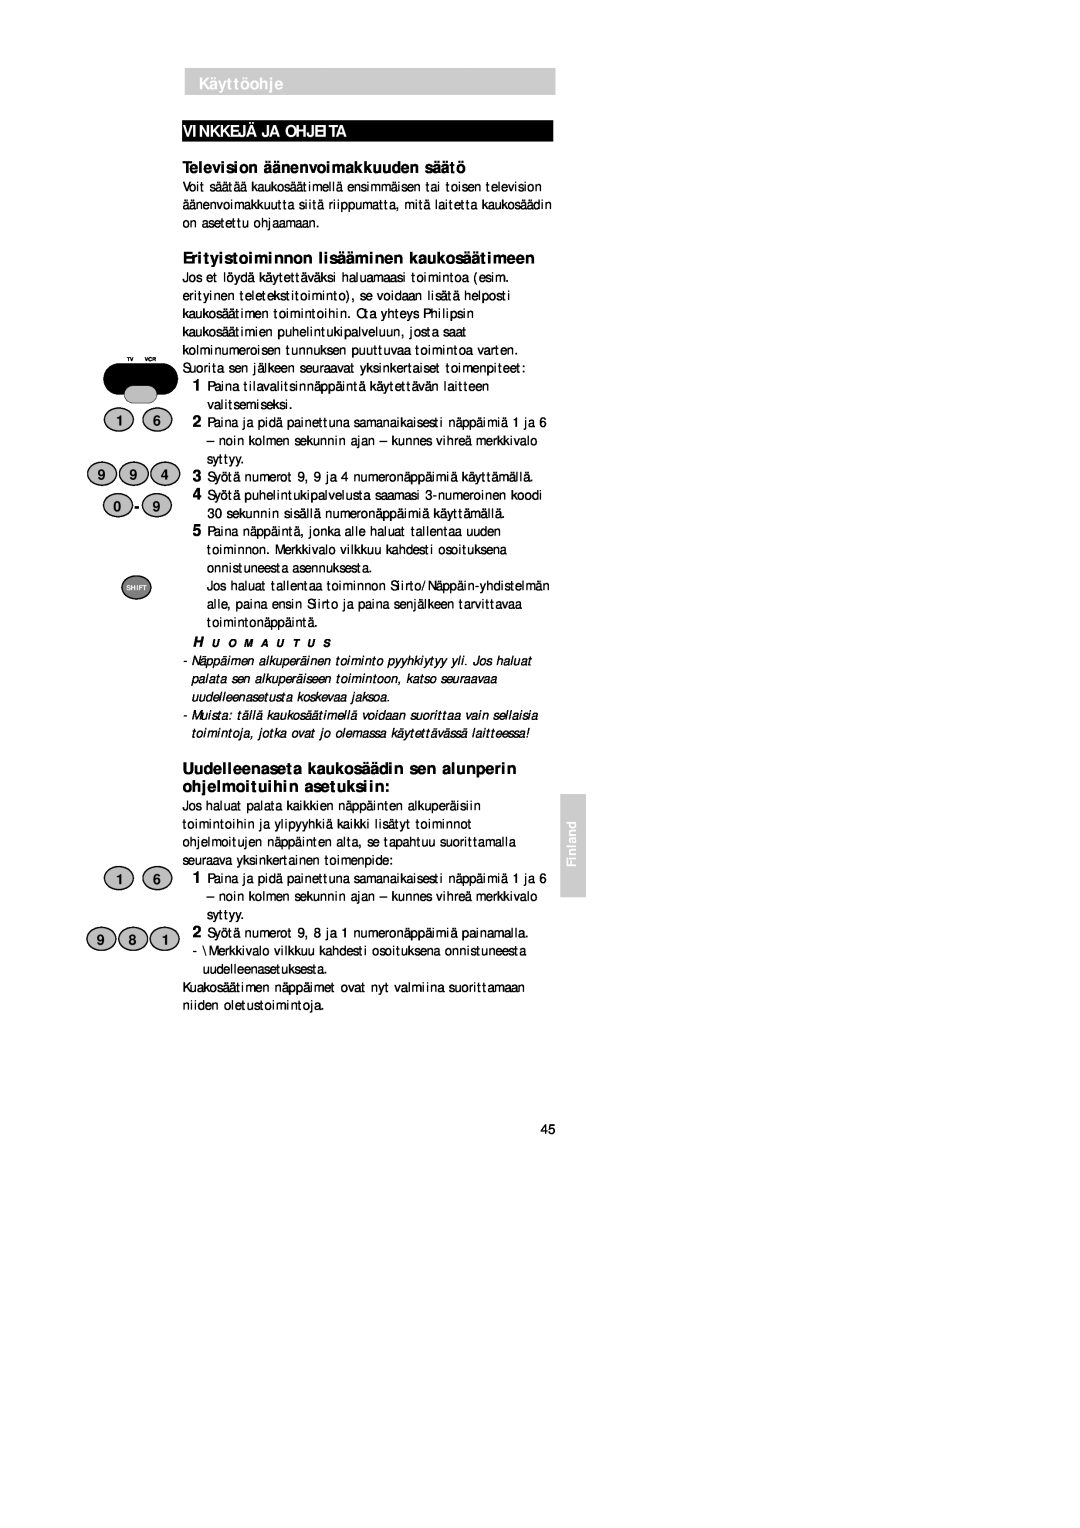 Philips SBC RU 520 manual Käyttöohje VINKKEJÄ JA OHJEITA, Television äänenvoimakkuuden säätö, Finland 